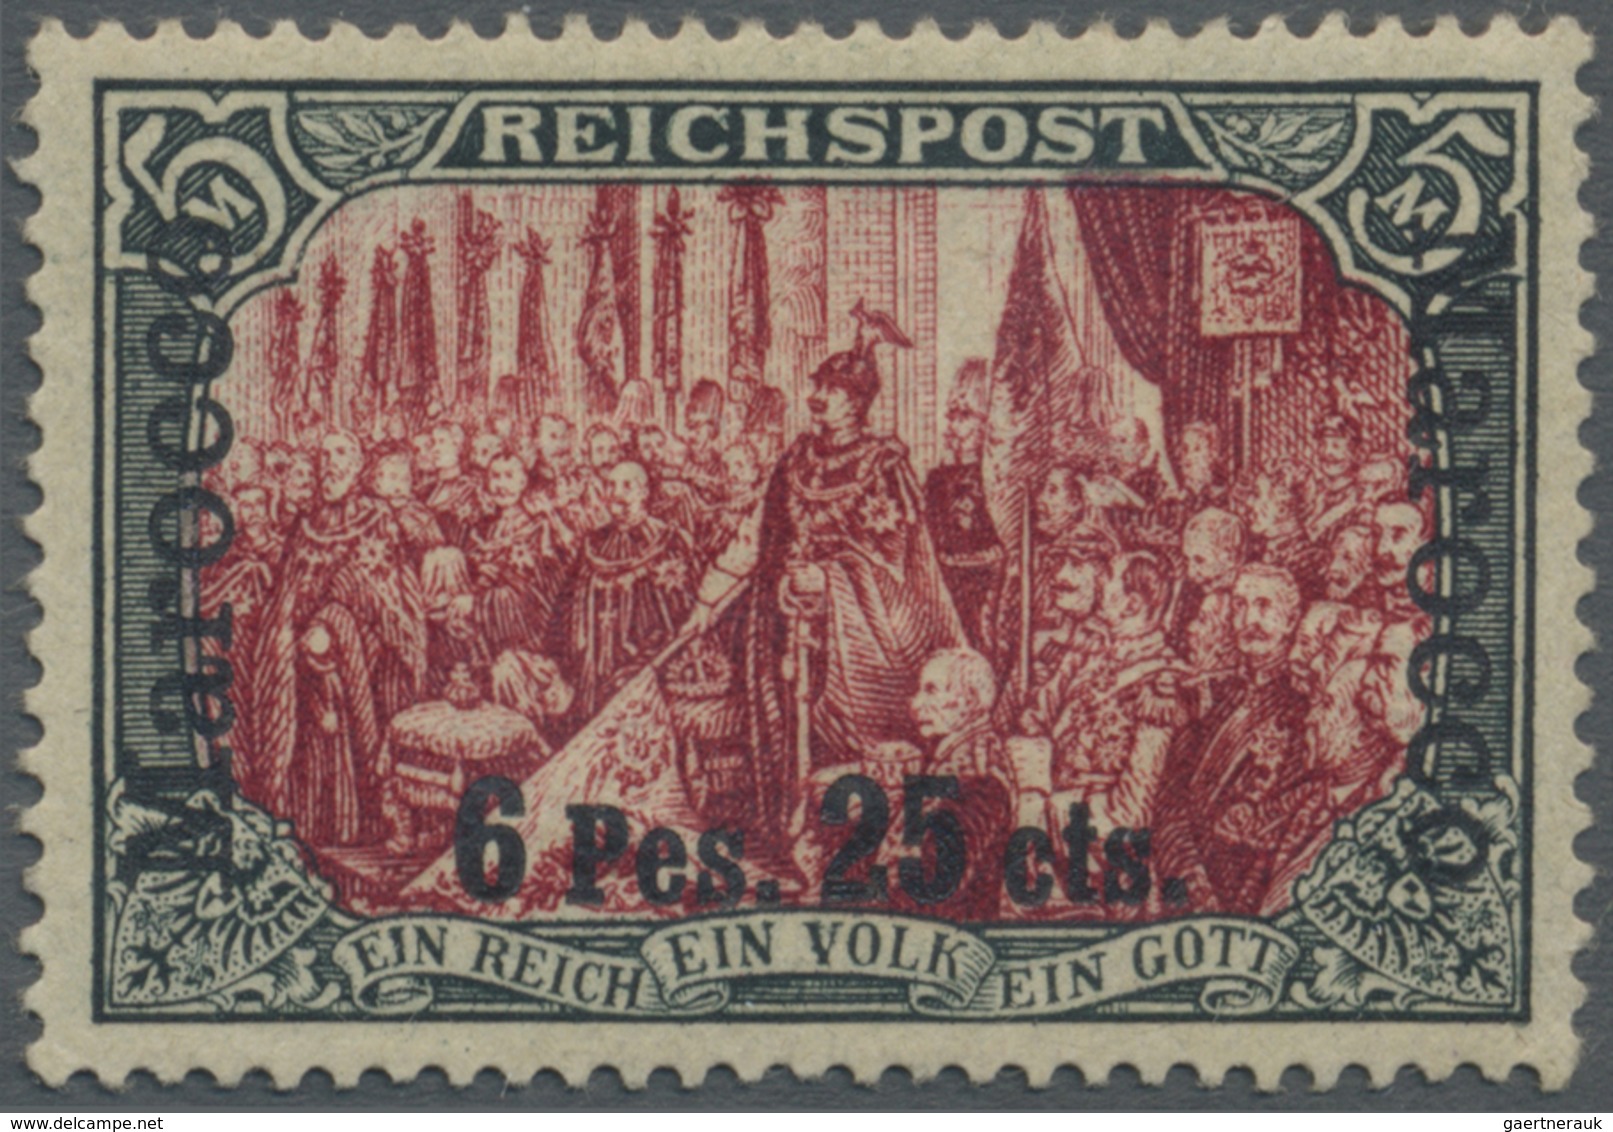 * Deutsche Post In Marokko: 1903. "6 P 25 C Auf 5 M Reichspost" In Type I / III, Ungebraucht, Kl. Mgl. - Deutsche Post In Marokko